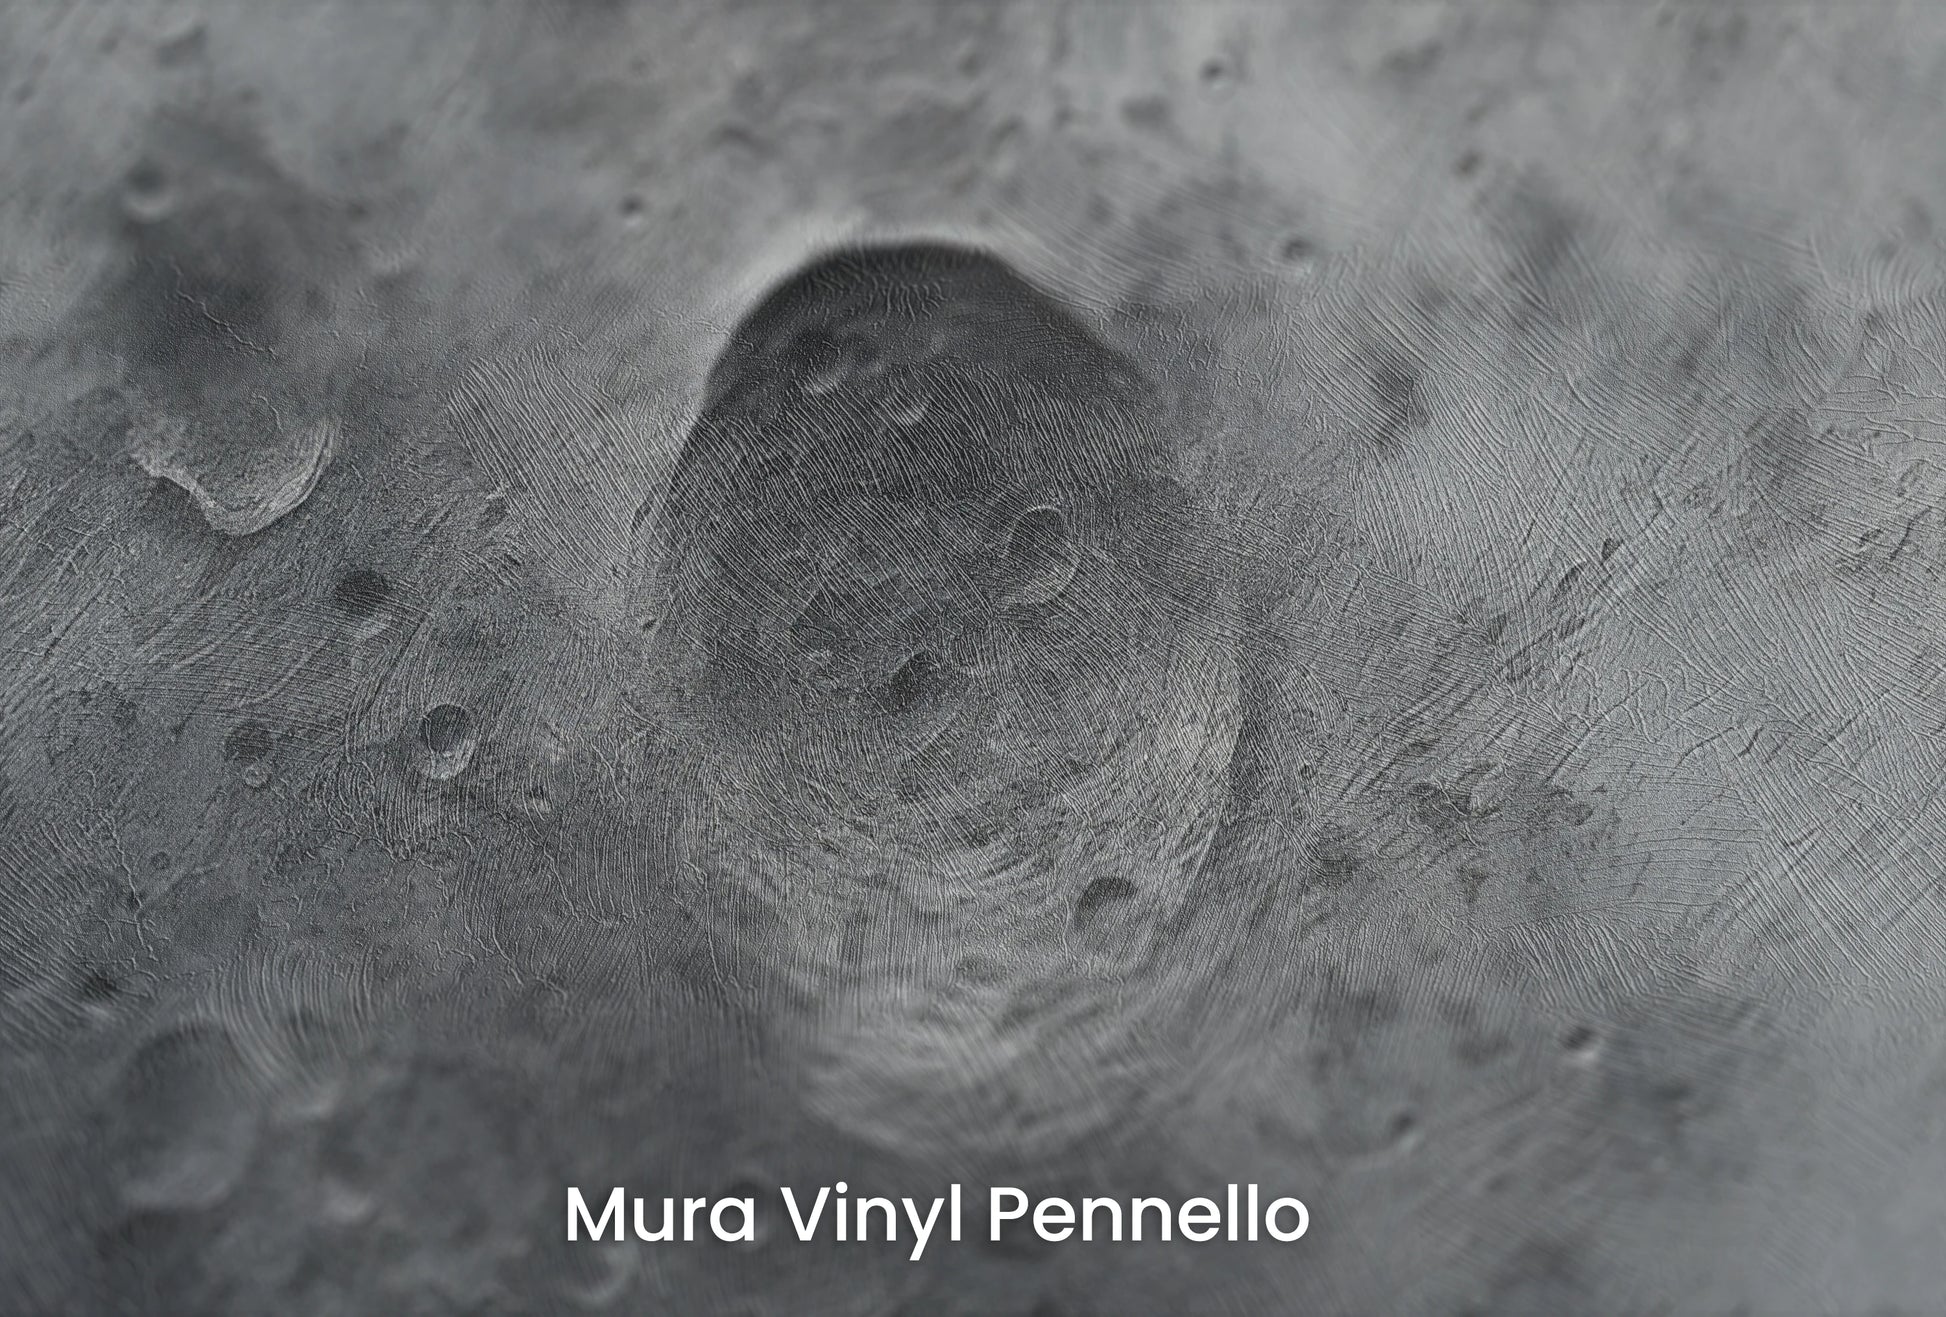 Zbliżenie na artystyczną fototapetę o nazwie Martian Swirl na podłożu Mura Vinyl Pennello - faktura pociągnięć pędzla malarskiego.